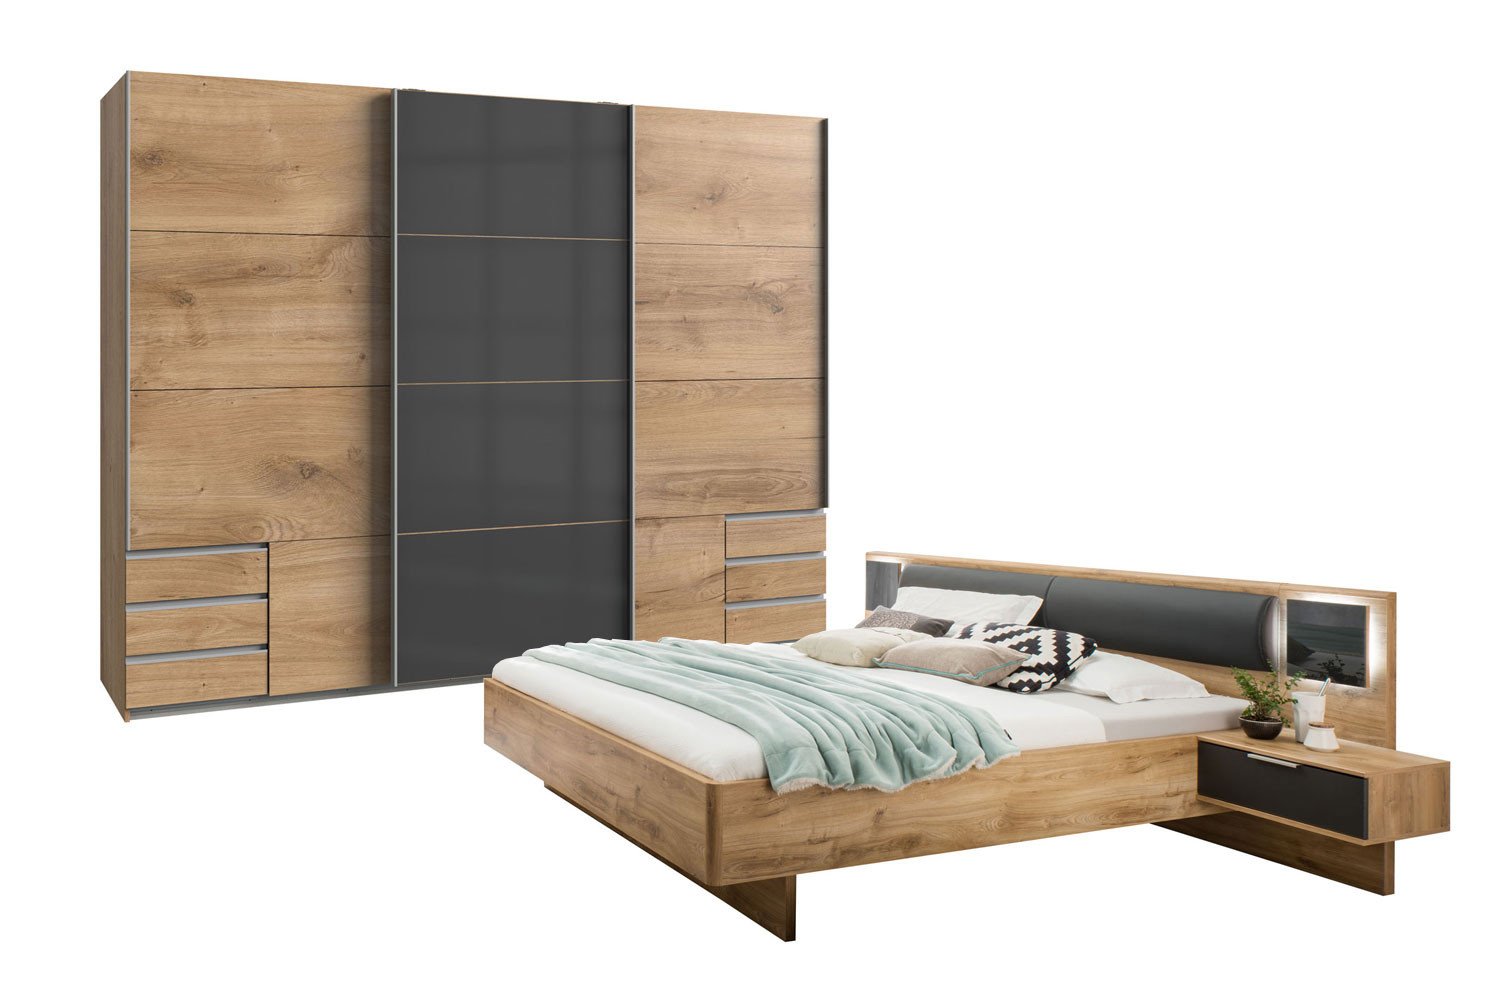 Wimex Nachbildung - Letz Schlafzimmer Ihr Plankeneiche Valencia | Online-Shop Möbel